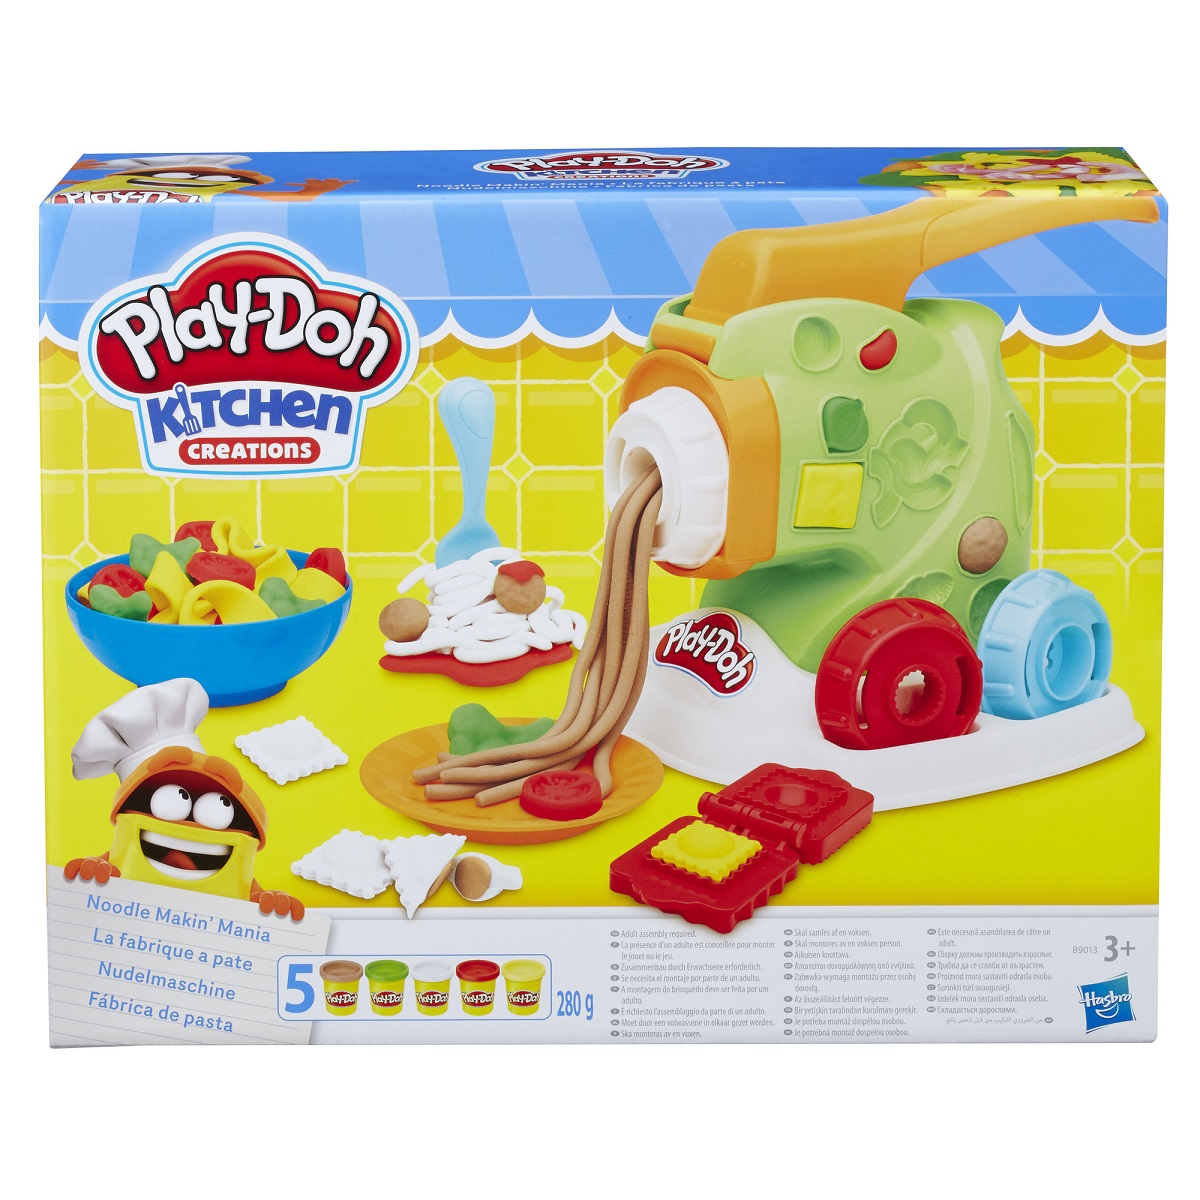 Promo Play-doh caisse enregistreuse chez Auchan